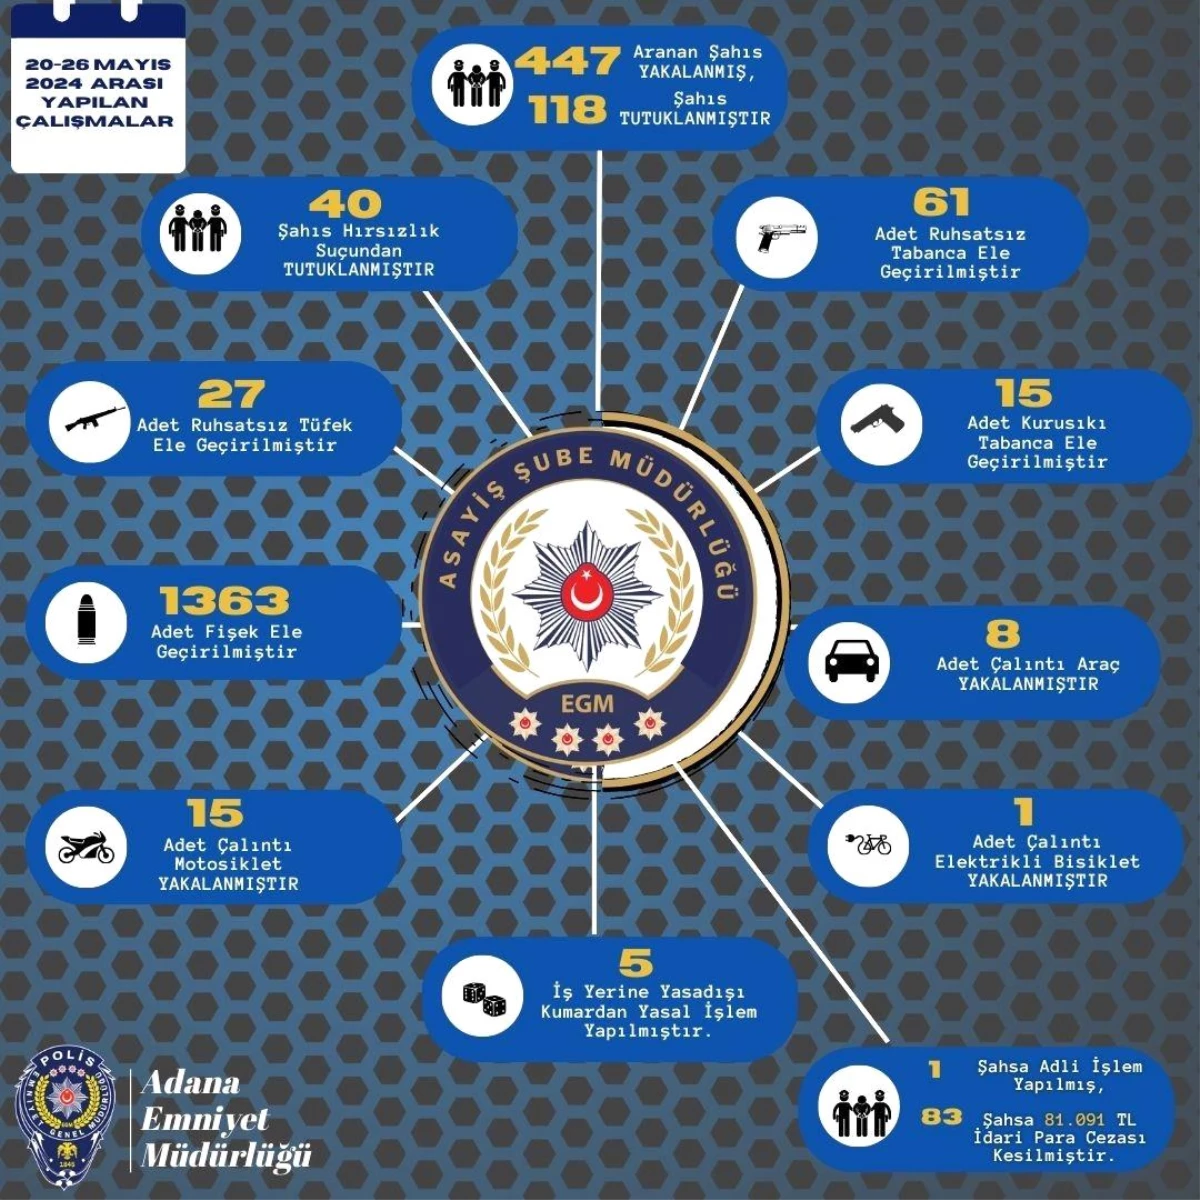 Adana İl Emniyet Müdürlüğü, 447 şüpheliyi yakaladı ve 118\'i tutukladı